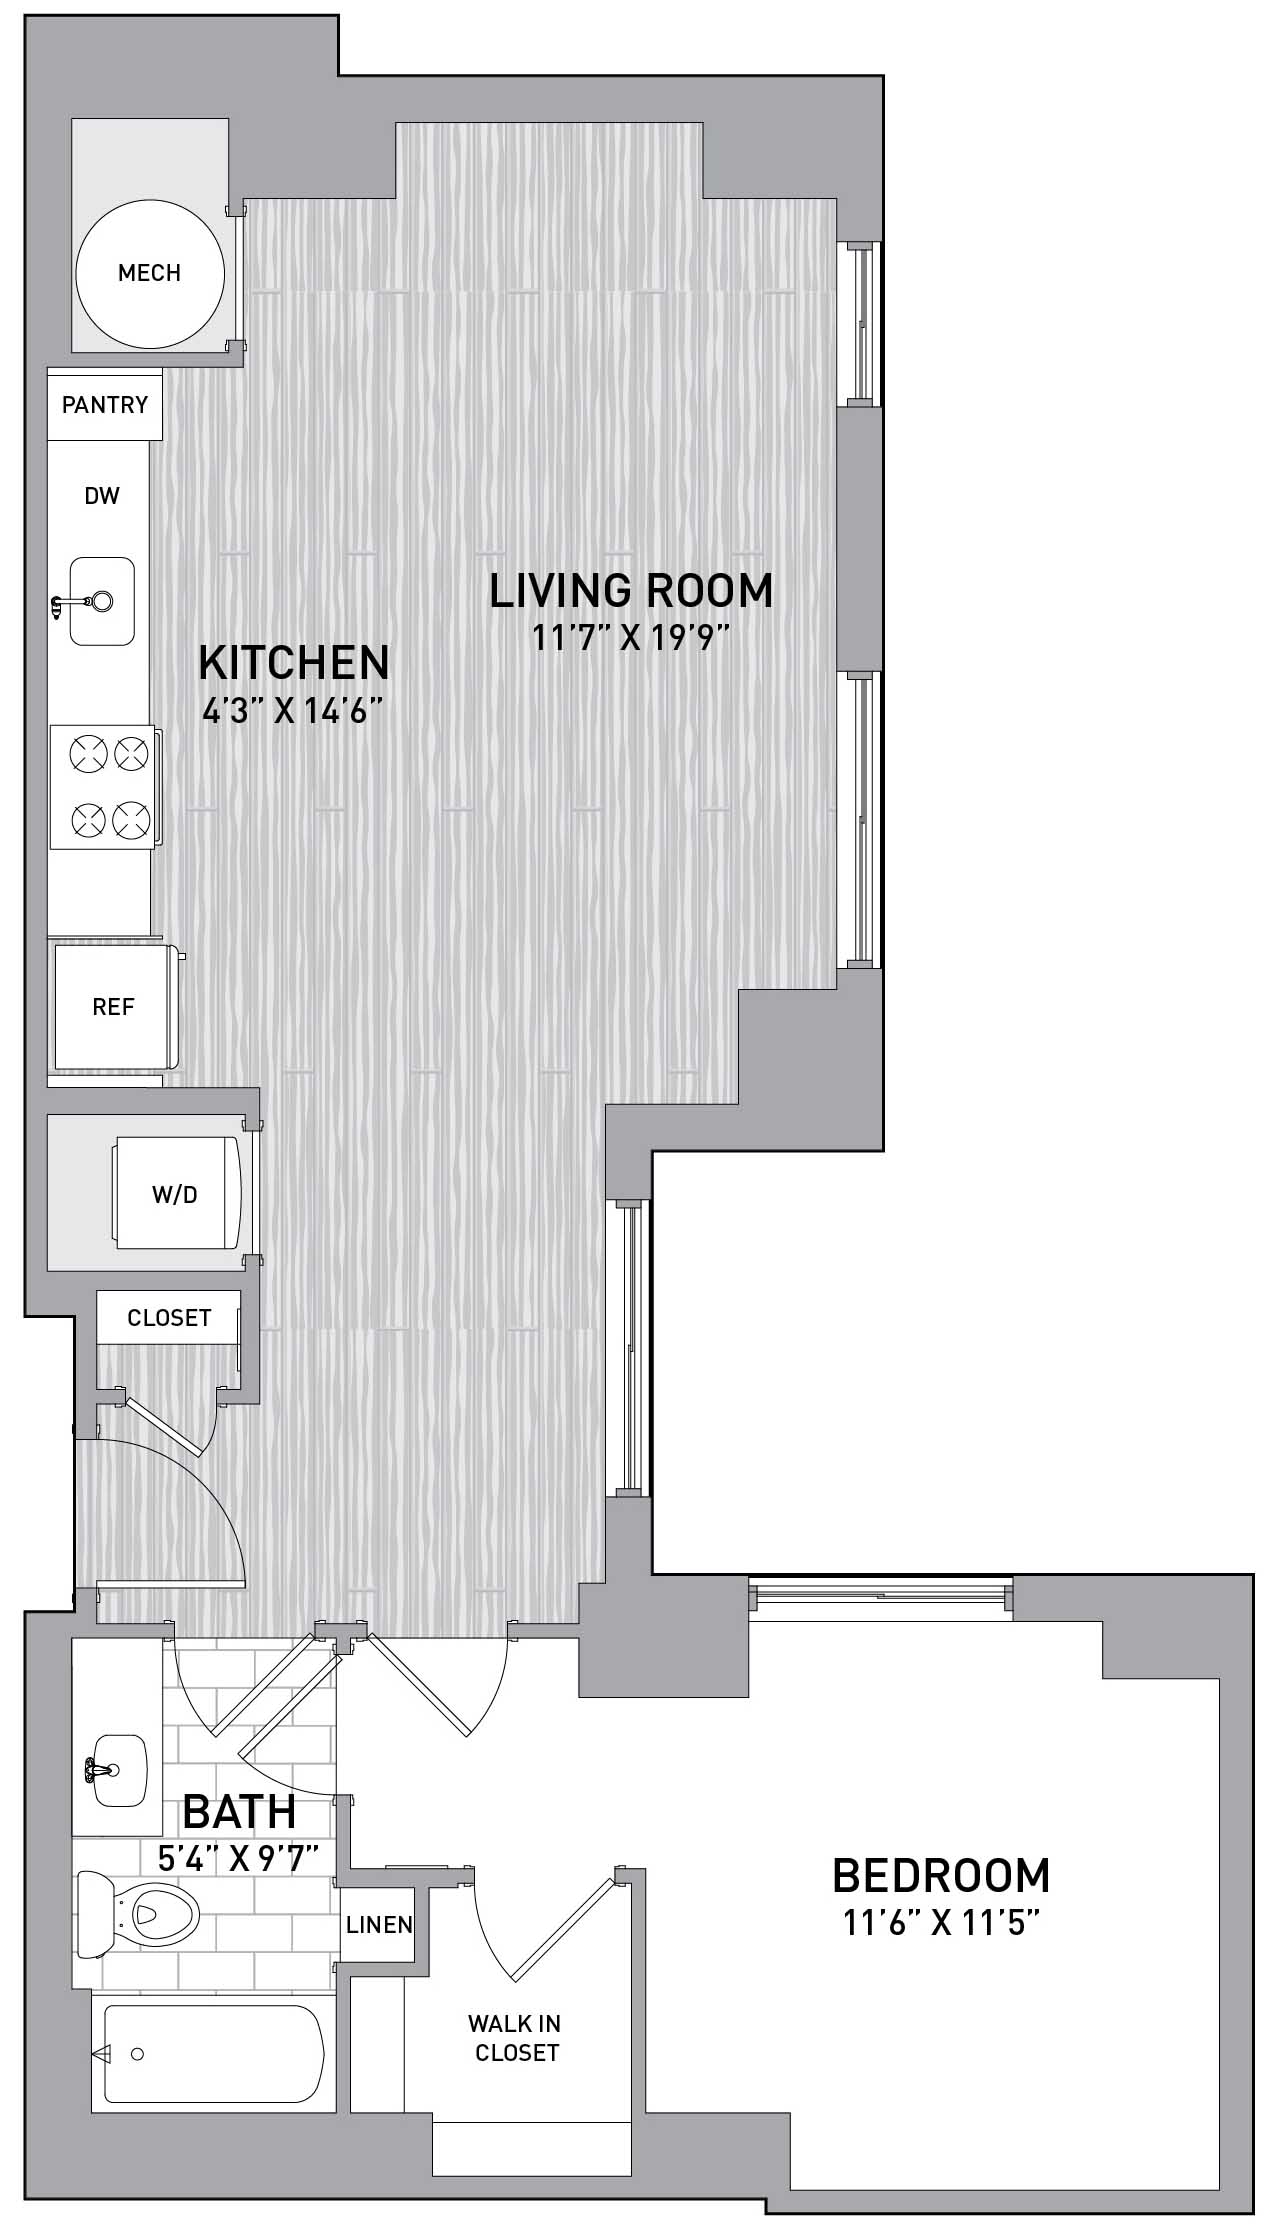 Floorplan Image of unit 151-0201